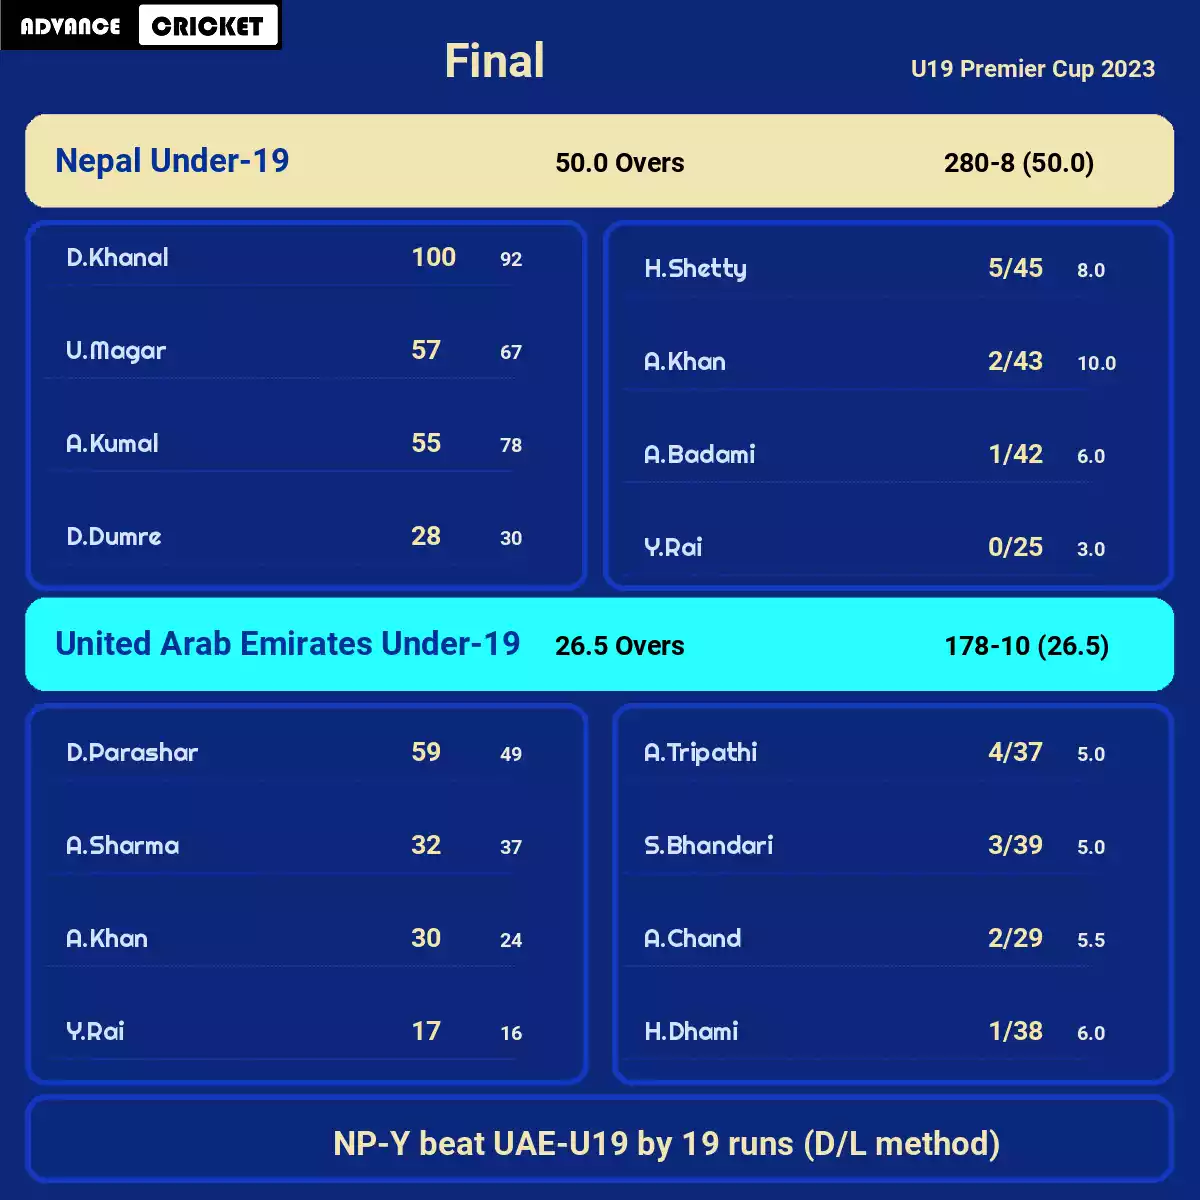 NP-Y vs UAE-U19 Final U19 Premier Cup 2023